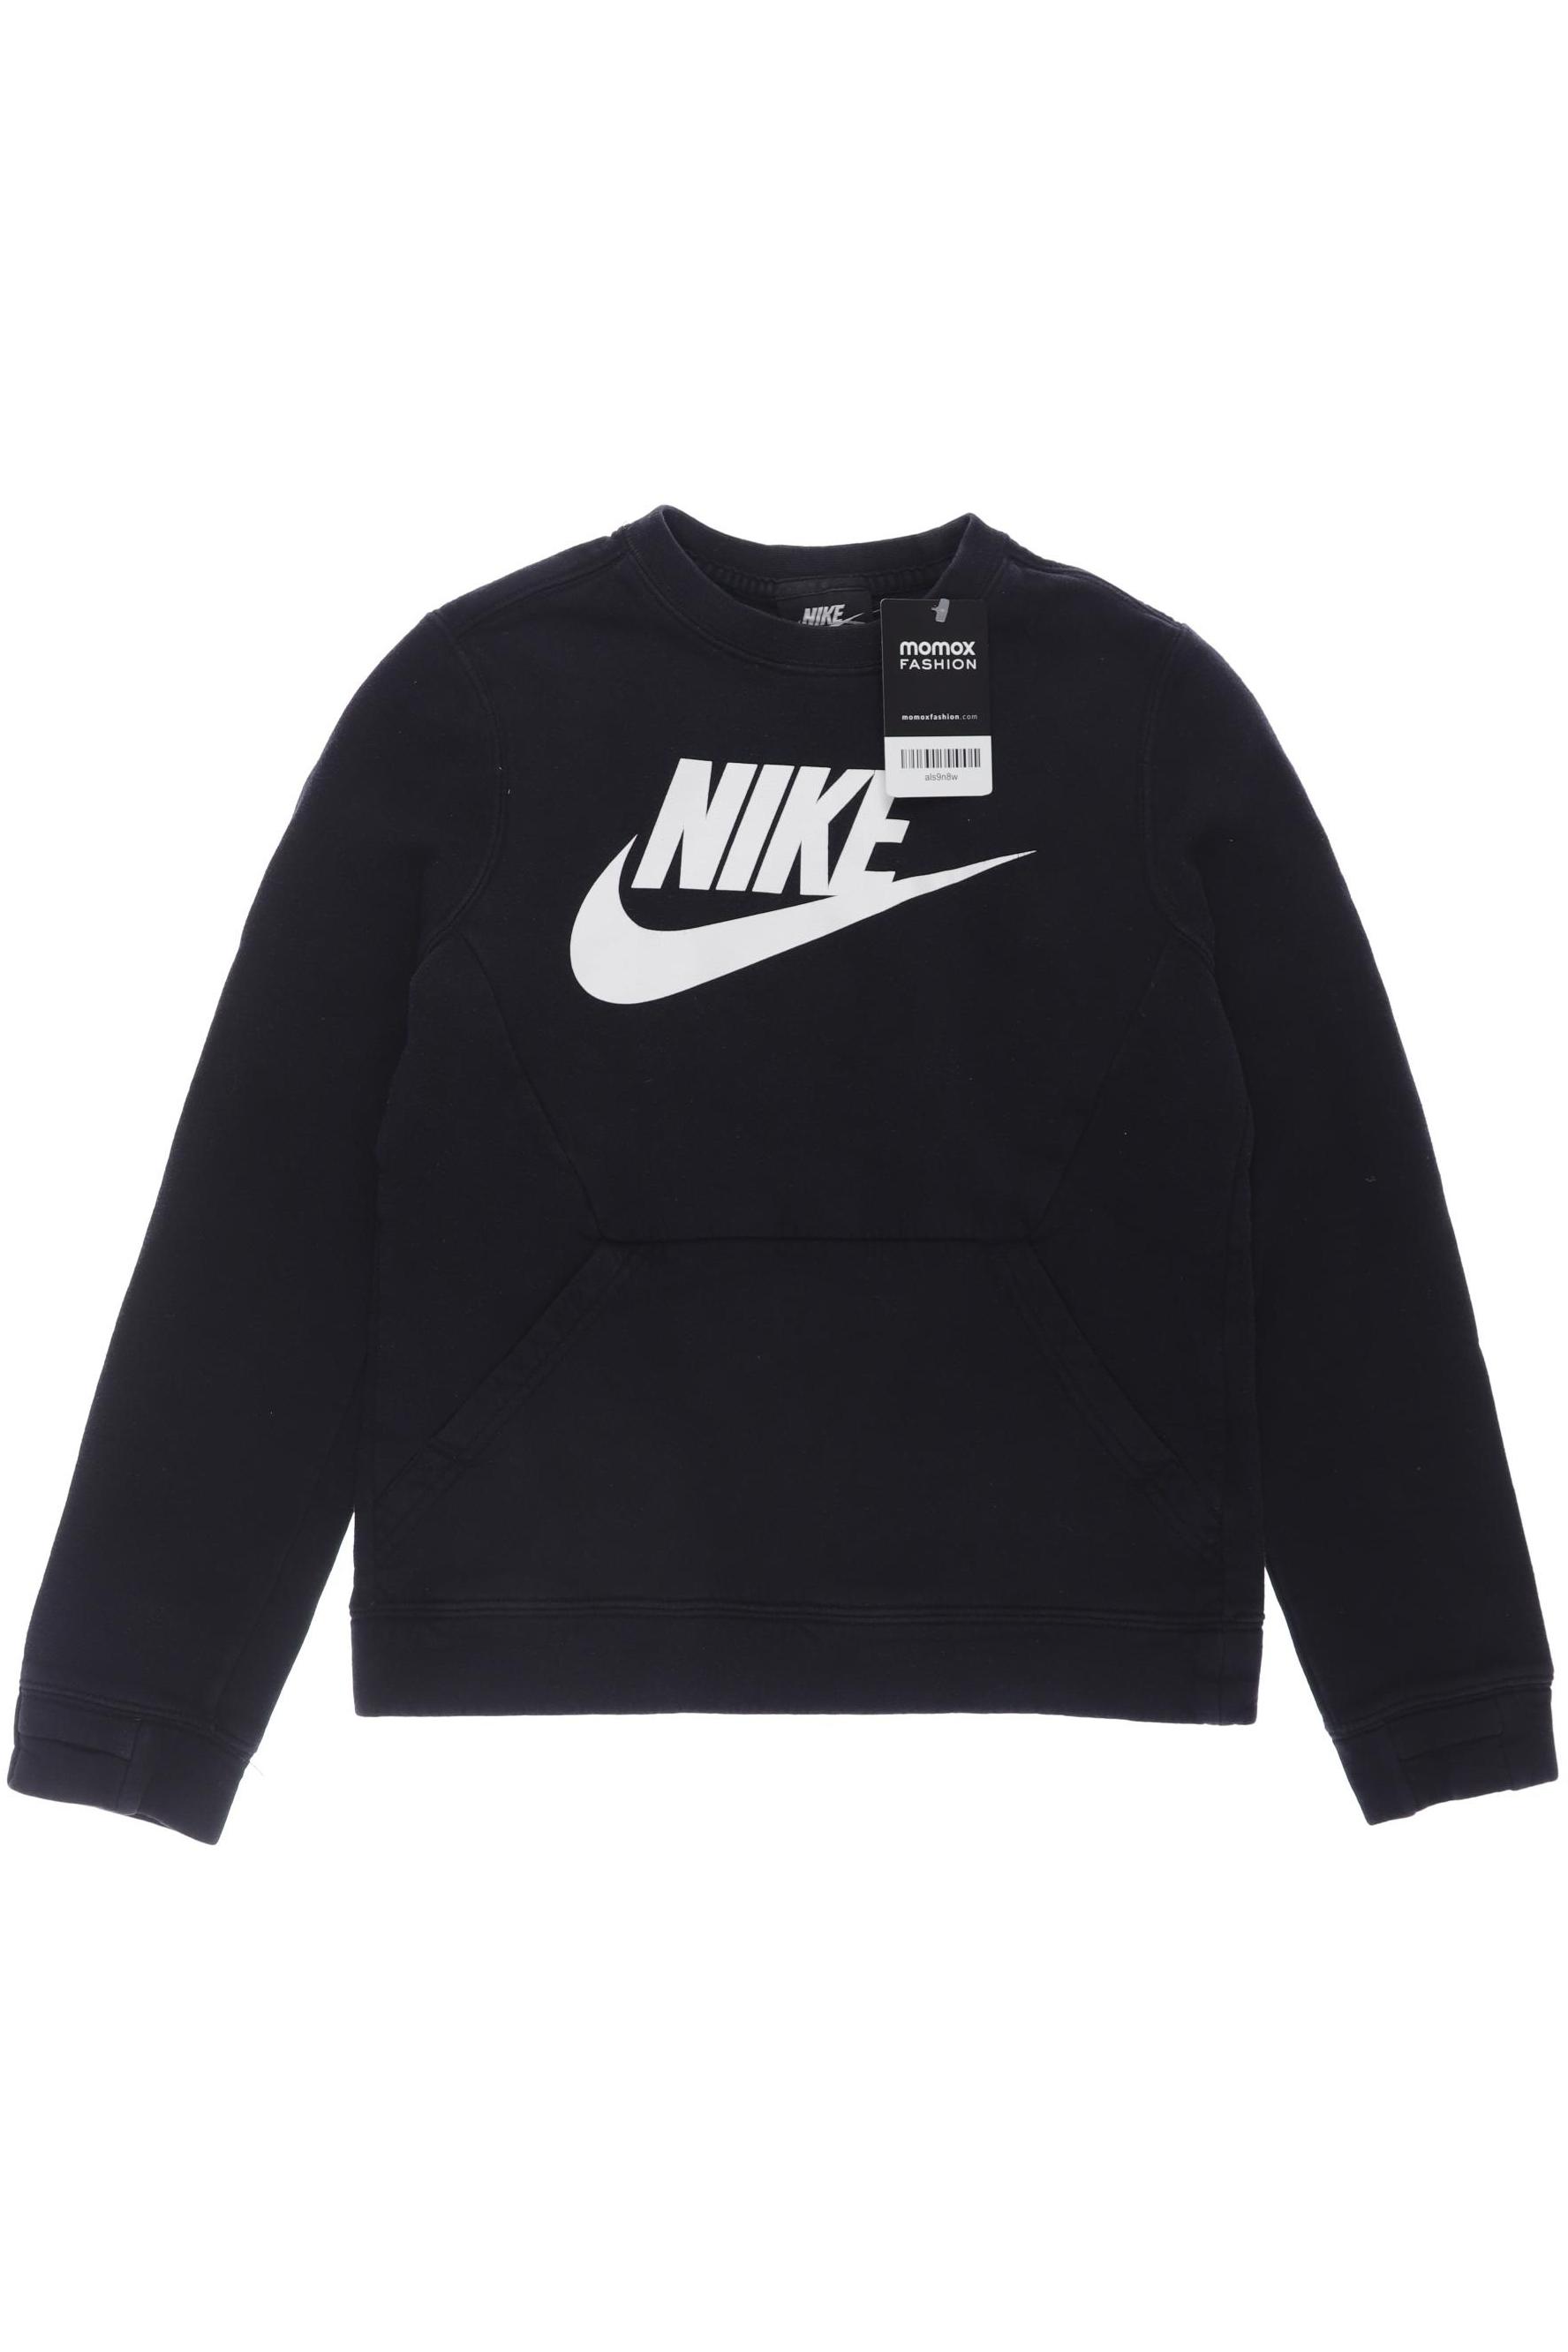 Nike Jungen Hoodies & Sweater, schwarz von Nike